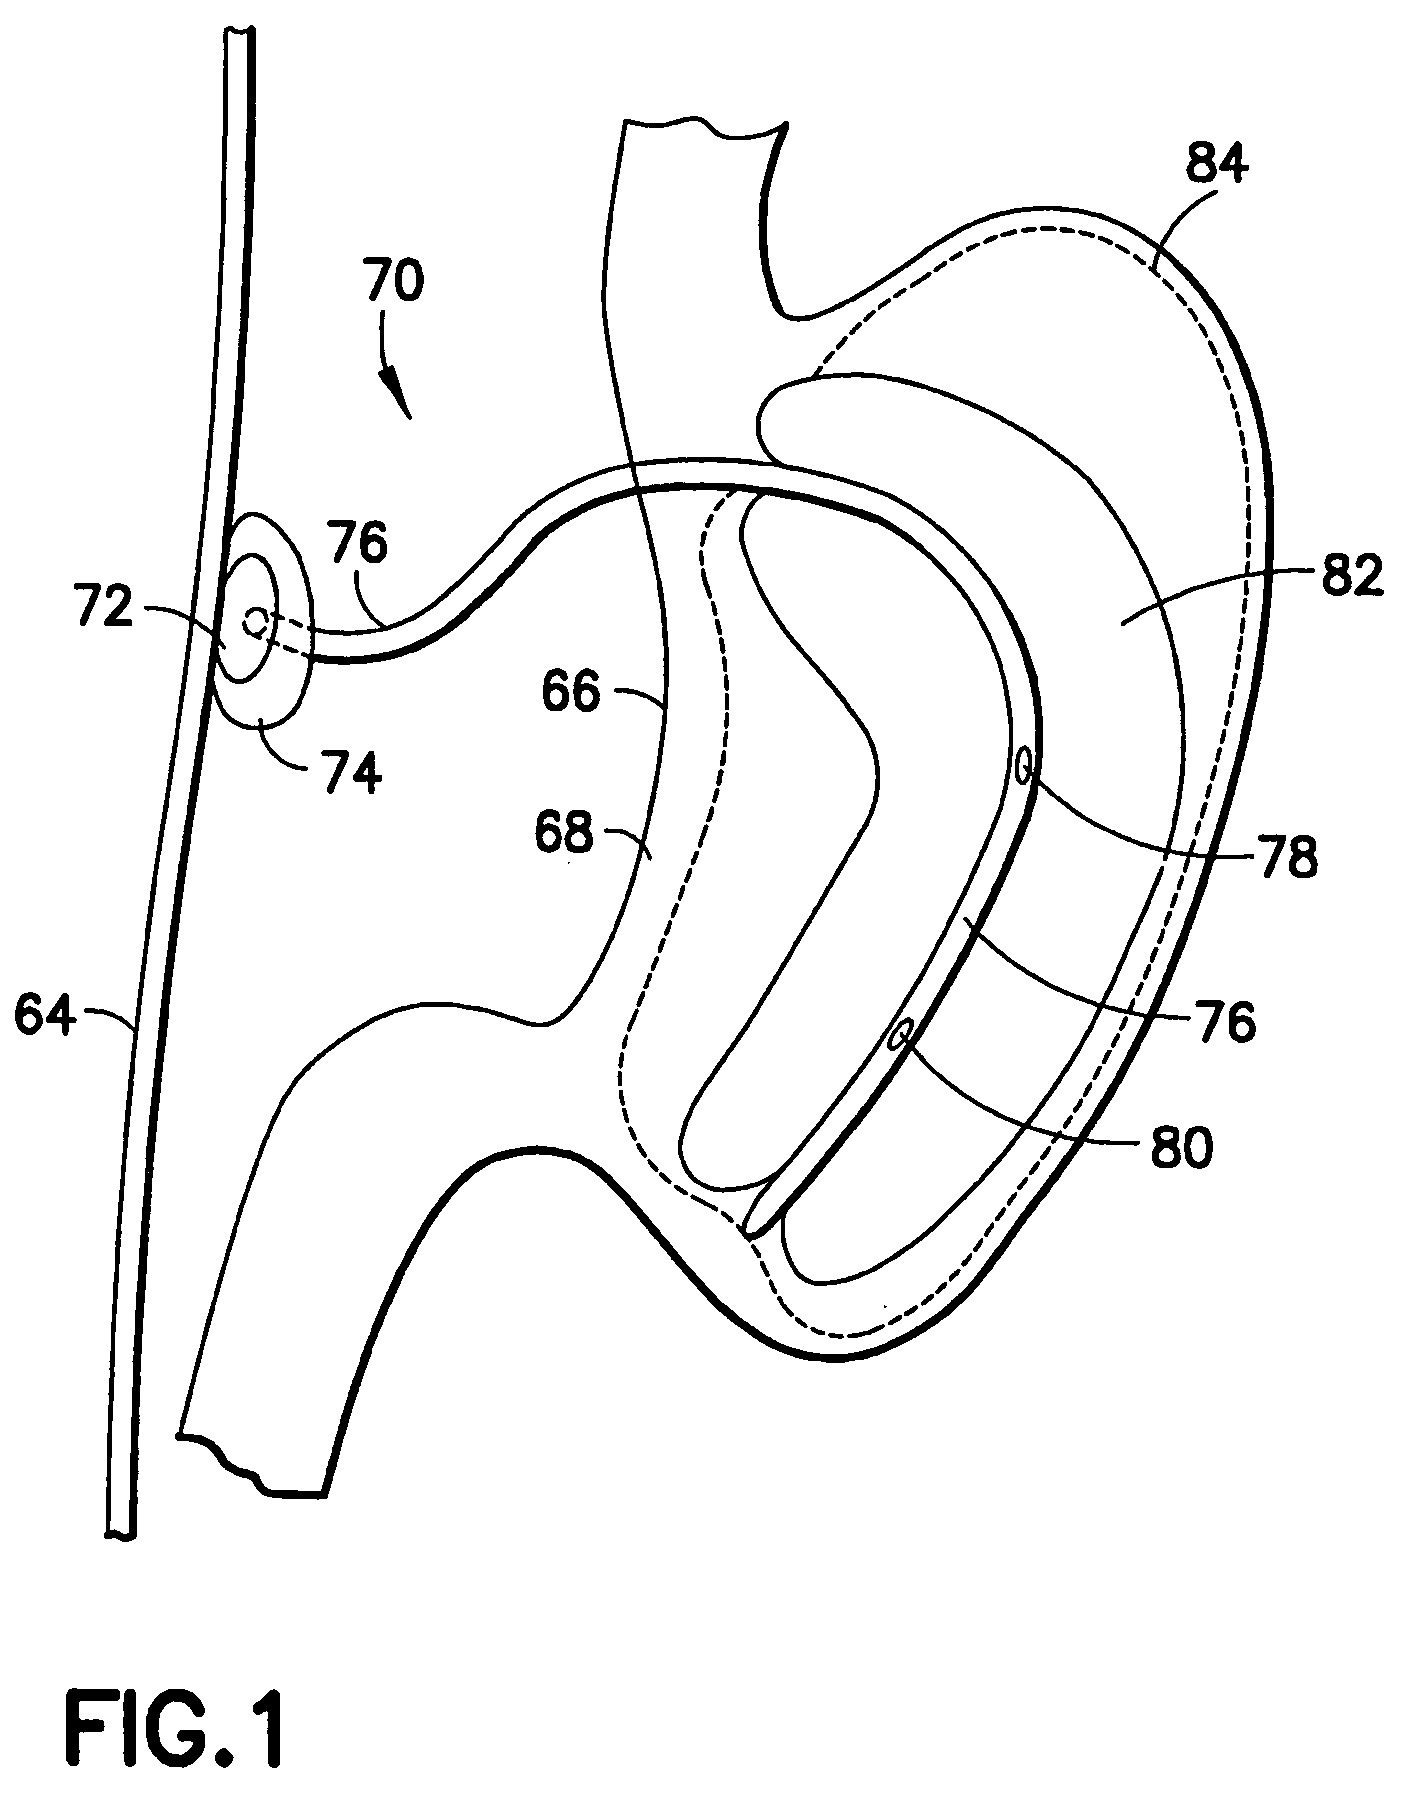 Gastro-occlusive device